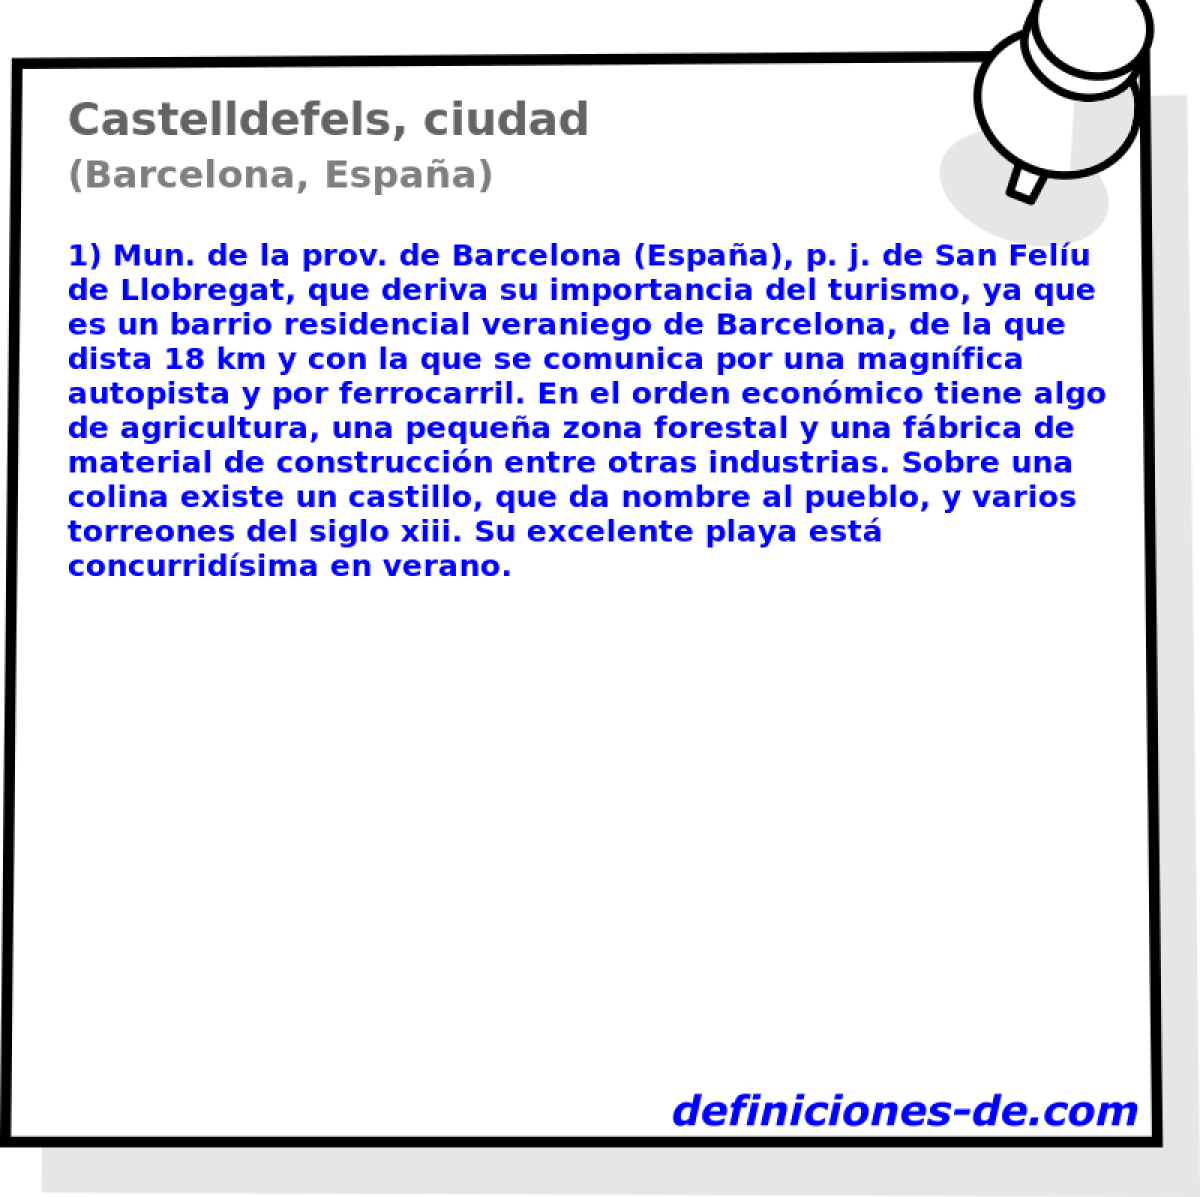 Castelldefels, ciudad (Barcelona, Espaa)